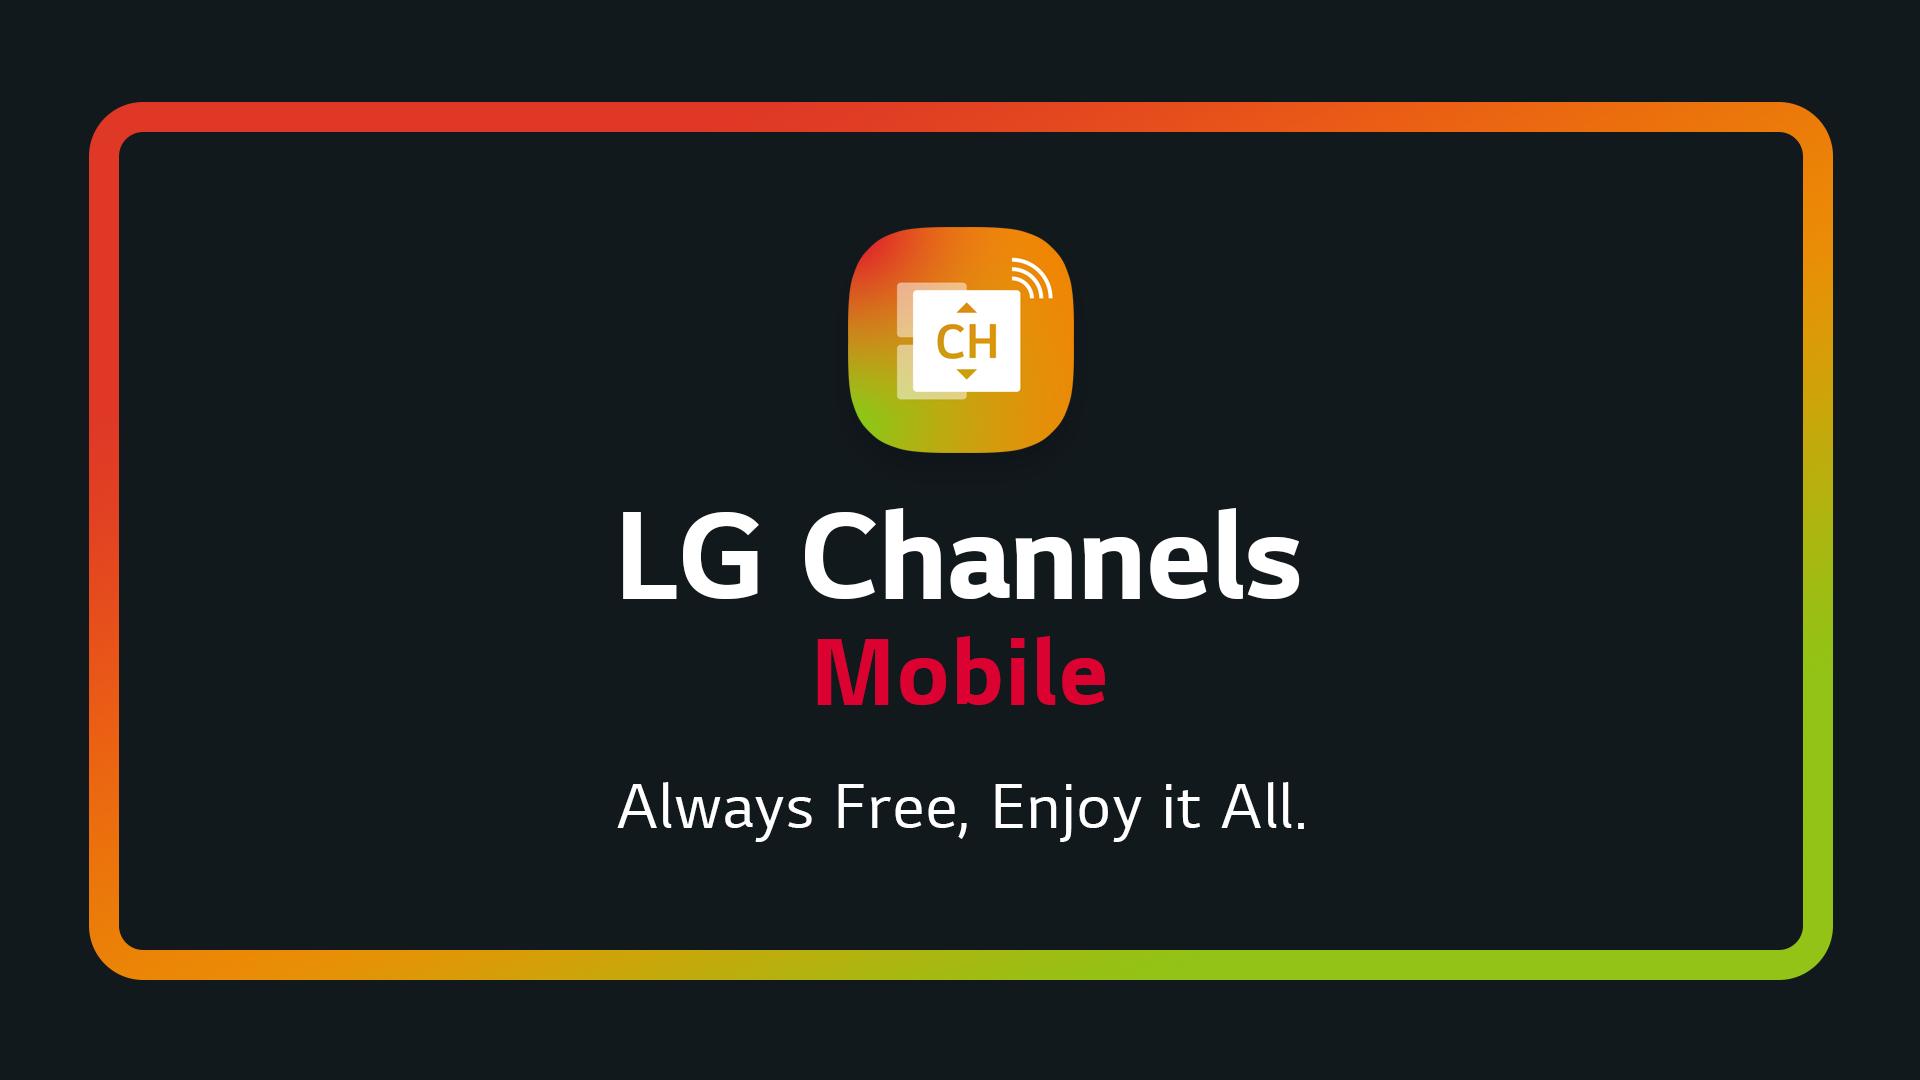 Lg channels